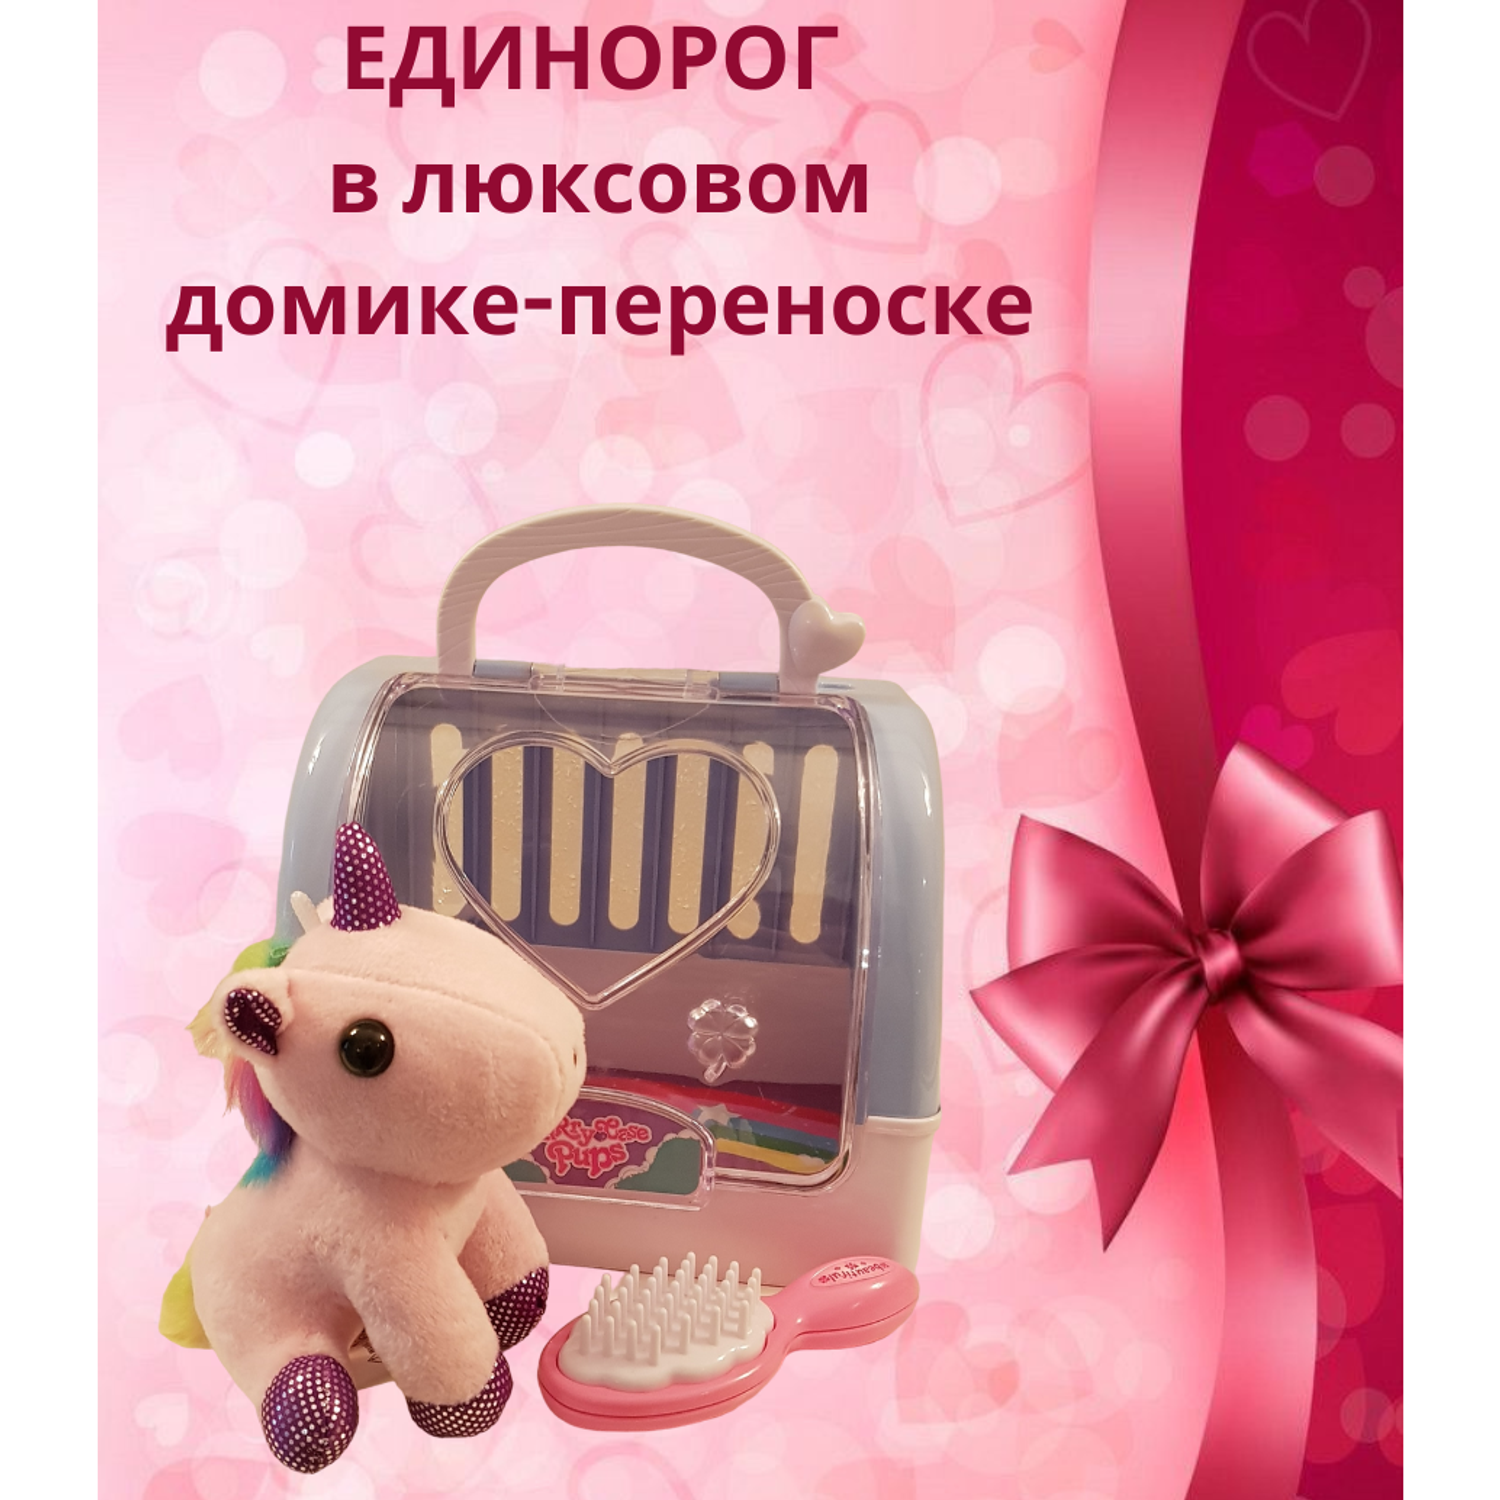 Мягкая игрушка мини EstaBella Единорожка с домиком переноской. Розовая. 13 см. - фото 2